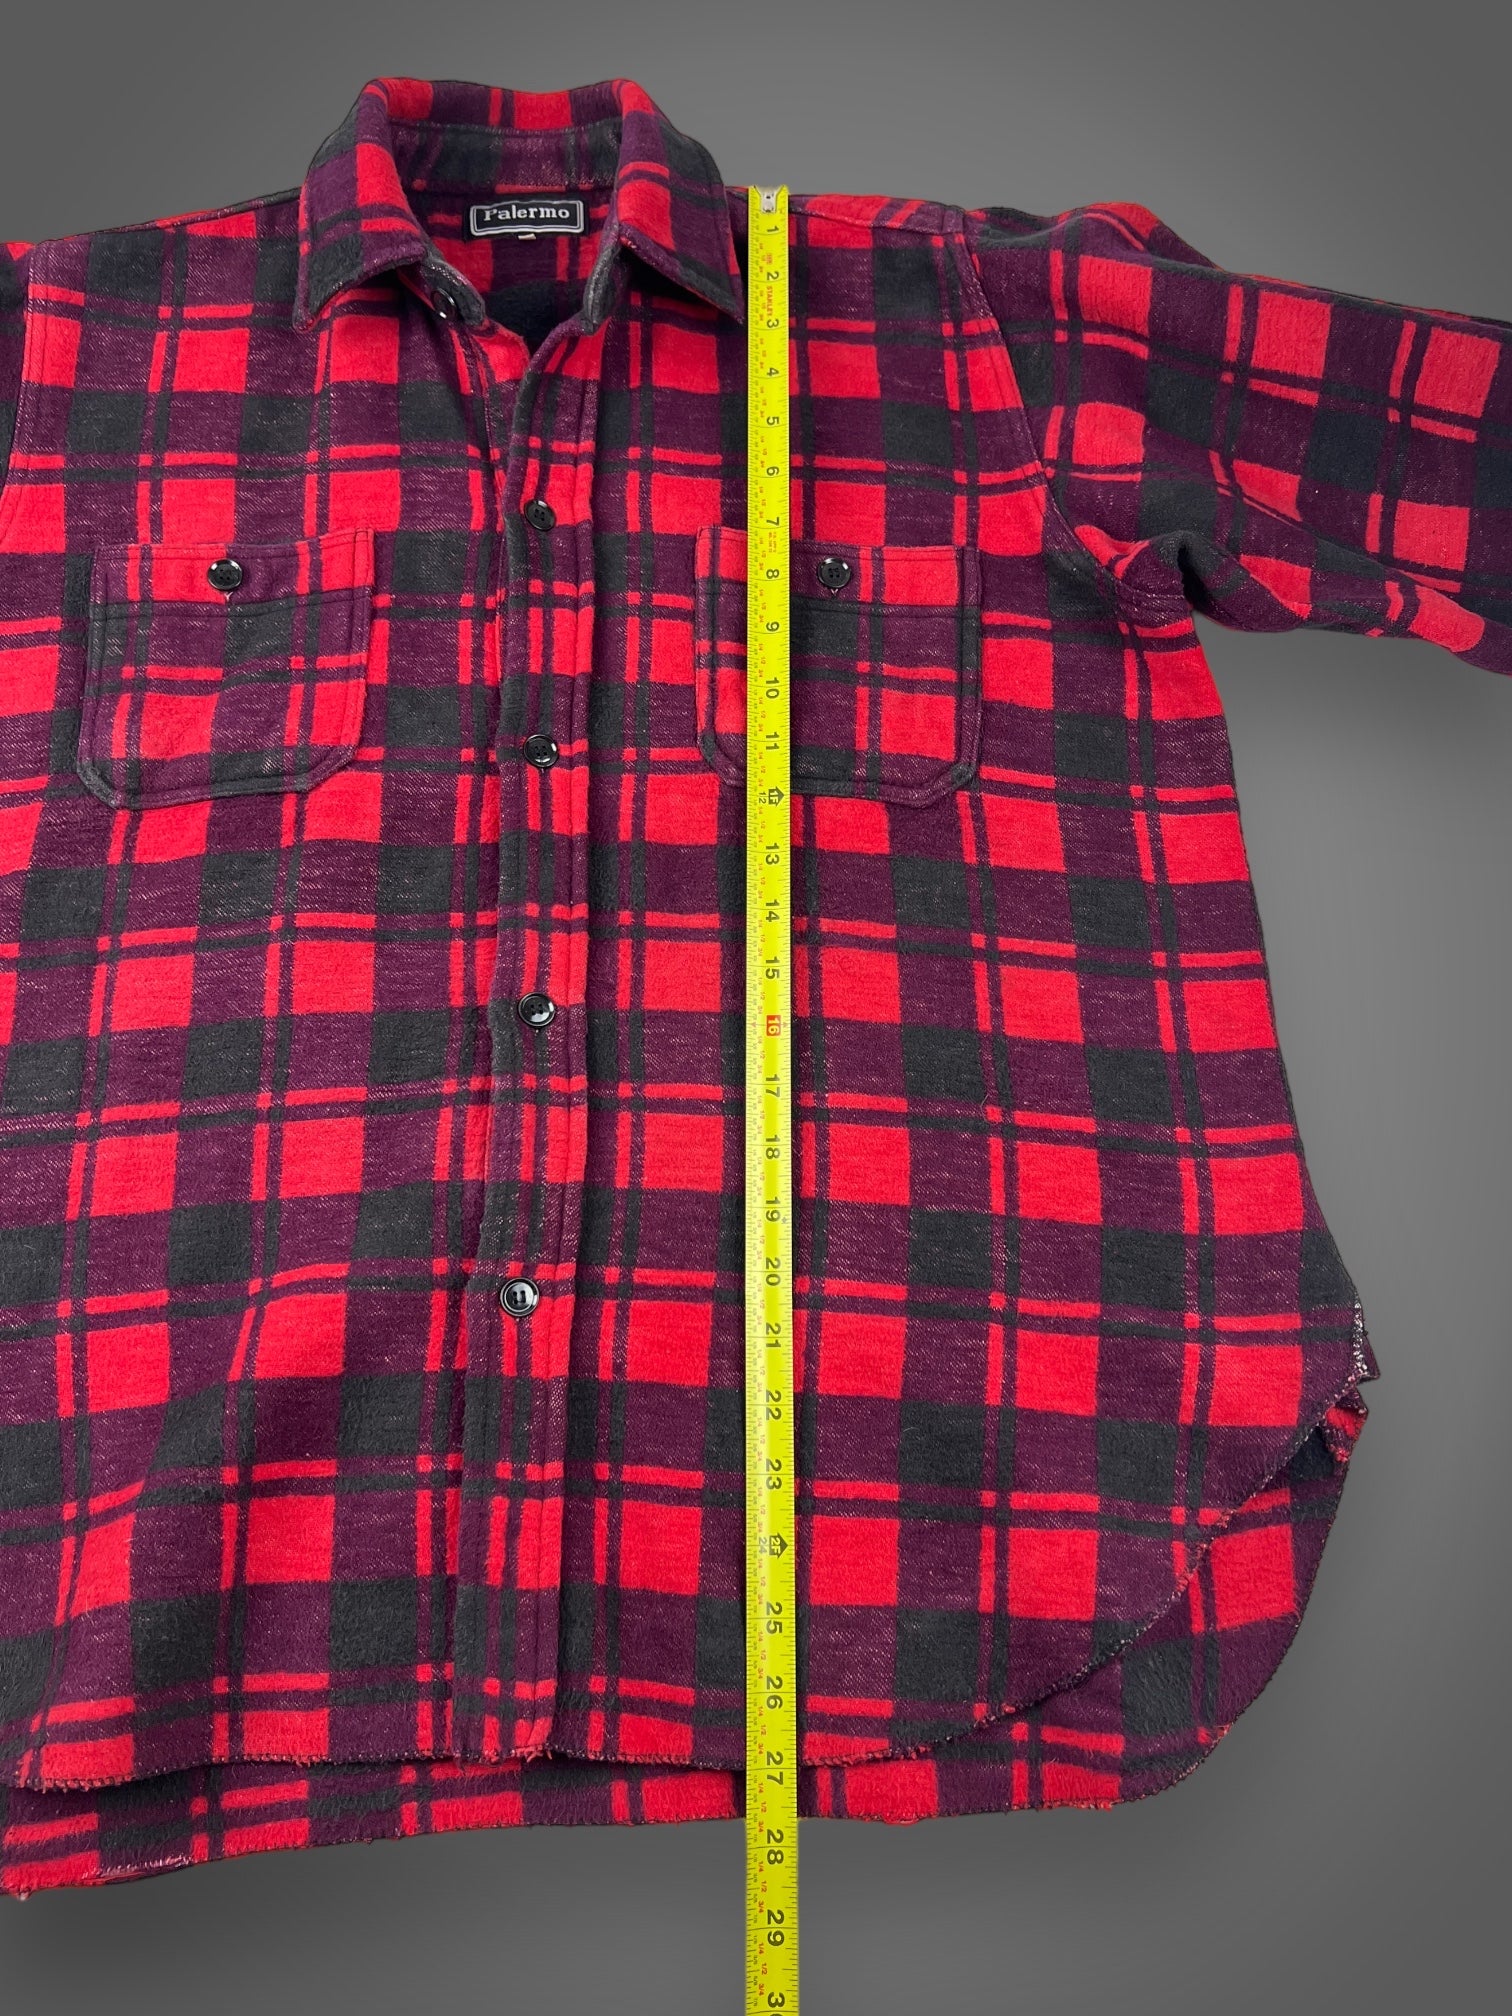 80s flannel plaid button down shirt L